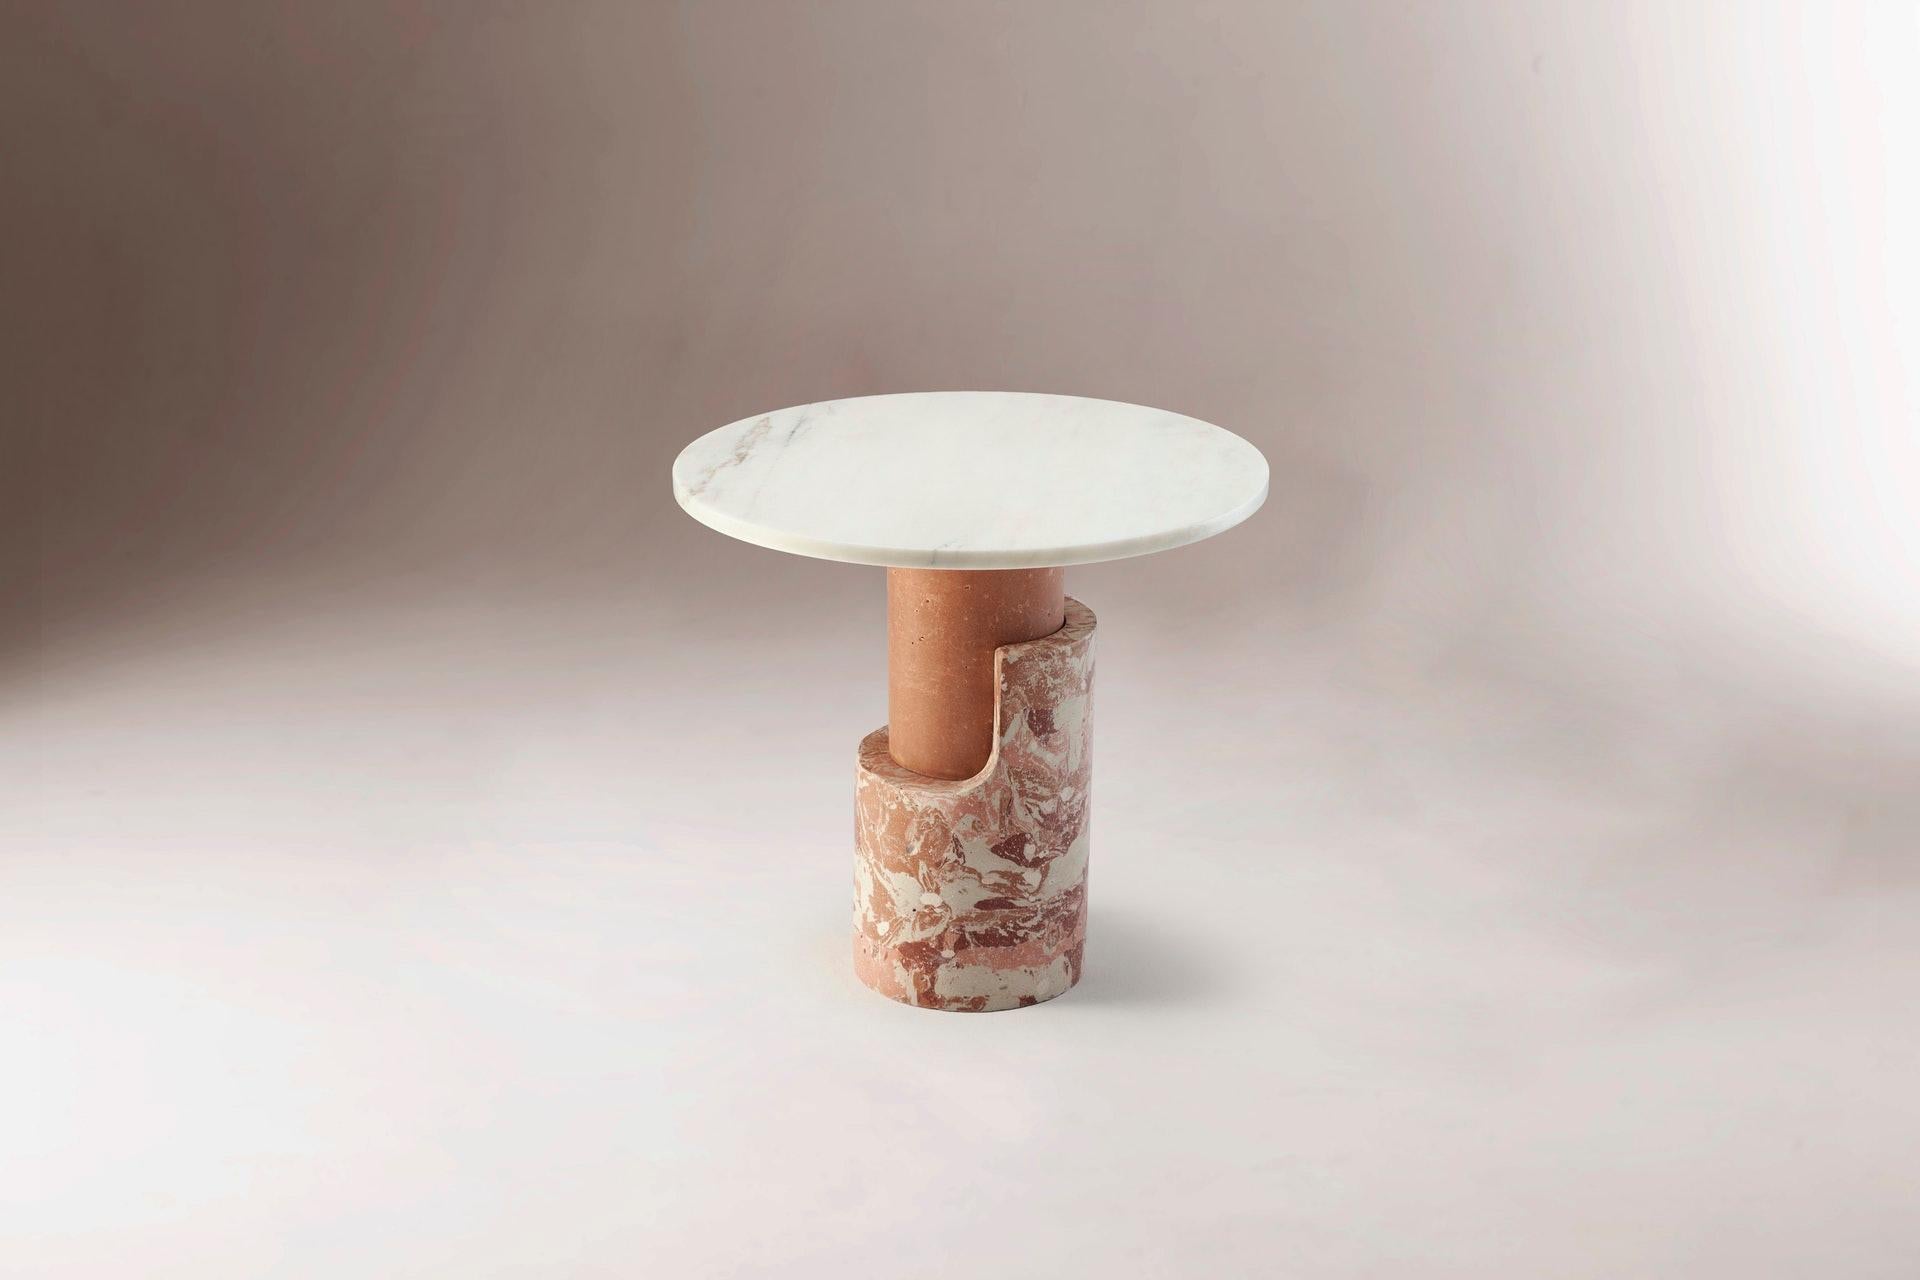 Braque Zeitgenössischer marmor-beistelltisch von Dooq
Abmessungen: B 60 x T 60 x H 55 cm
MATERIALIEN: Vollständig handgefertigt aus Marmor

Produkt
Der Braque Side Table ist ein eleganter und raffinierter Beistelltisch von Dooq. Braque ist